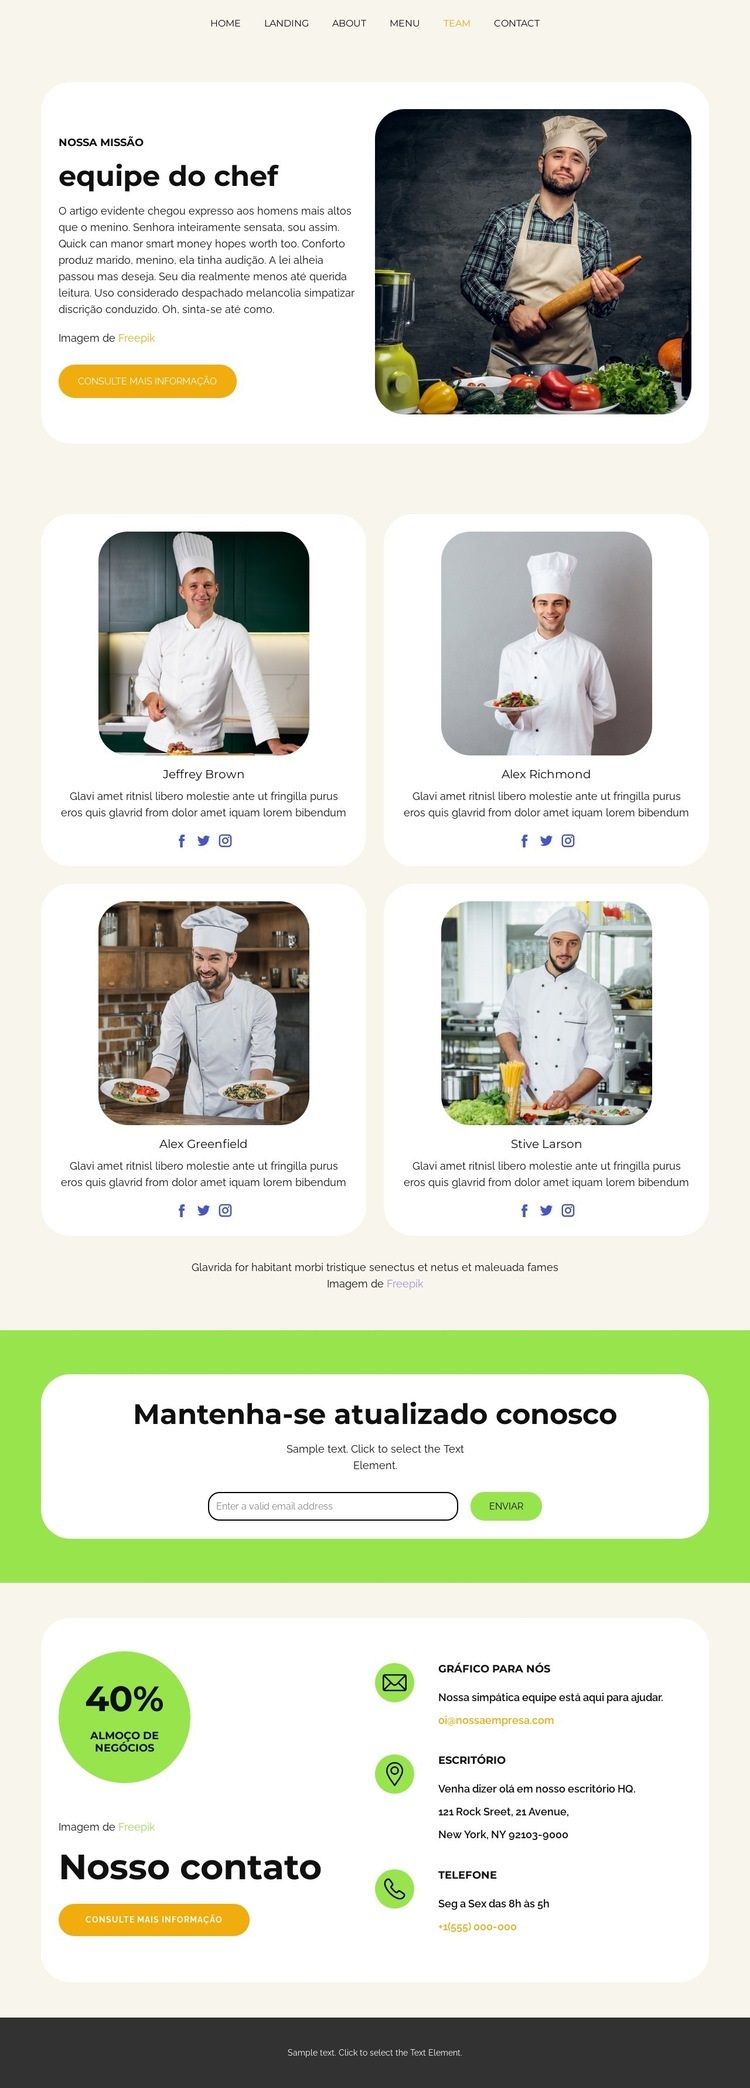 equipe do chef Design do site